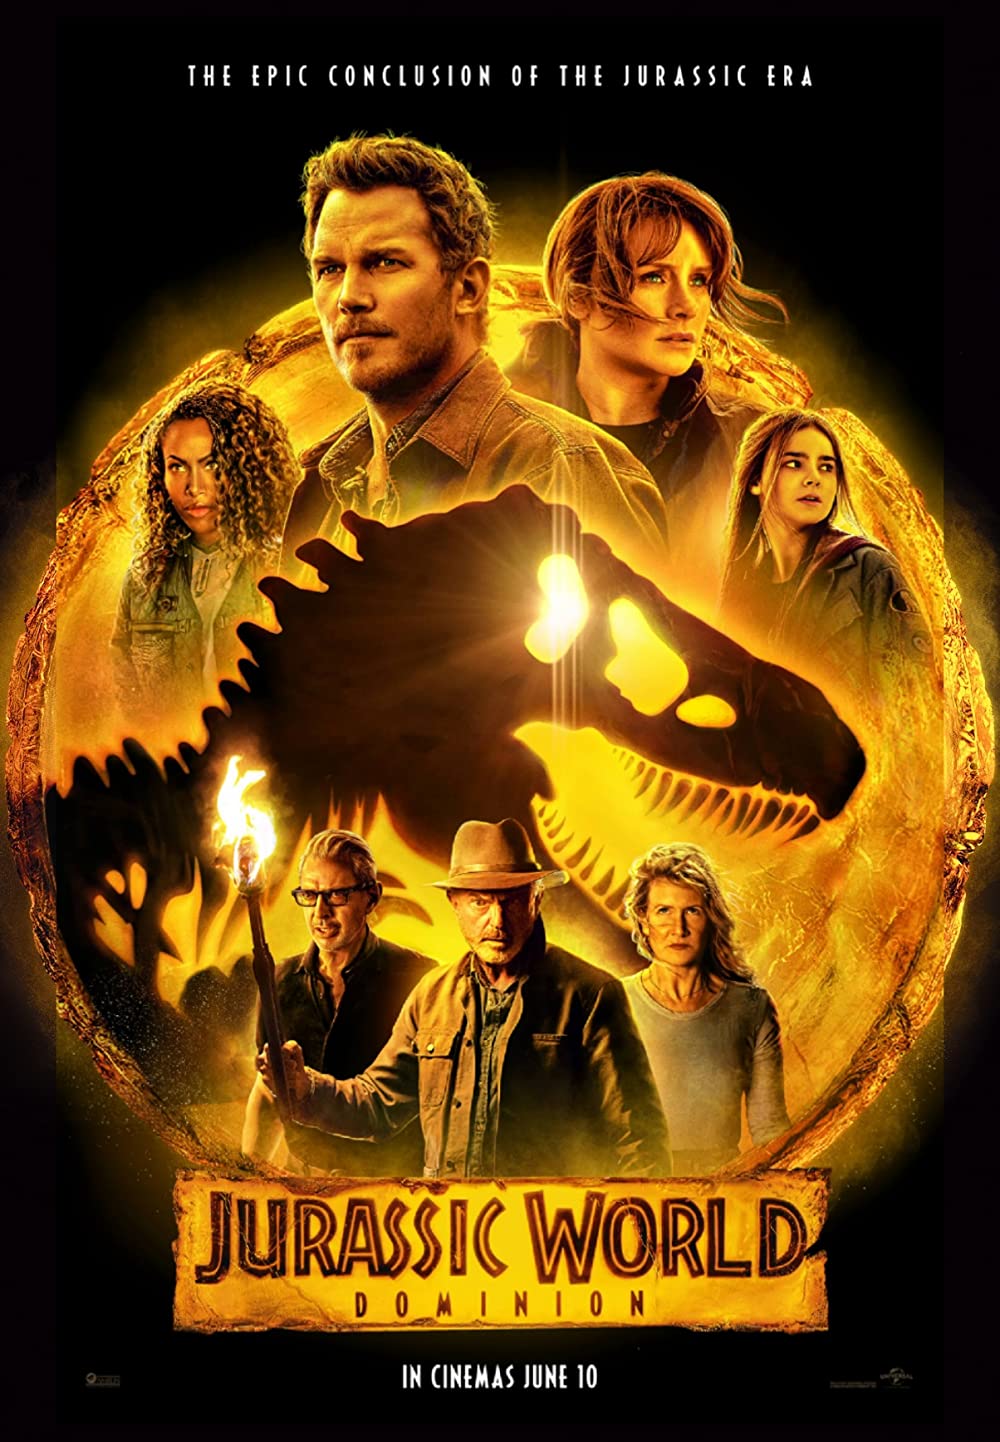 Jurassic World Dominion (2022) 7:30 P.M. @ O'Brien Theatre in Renfrew